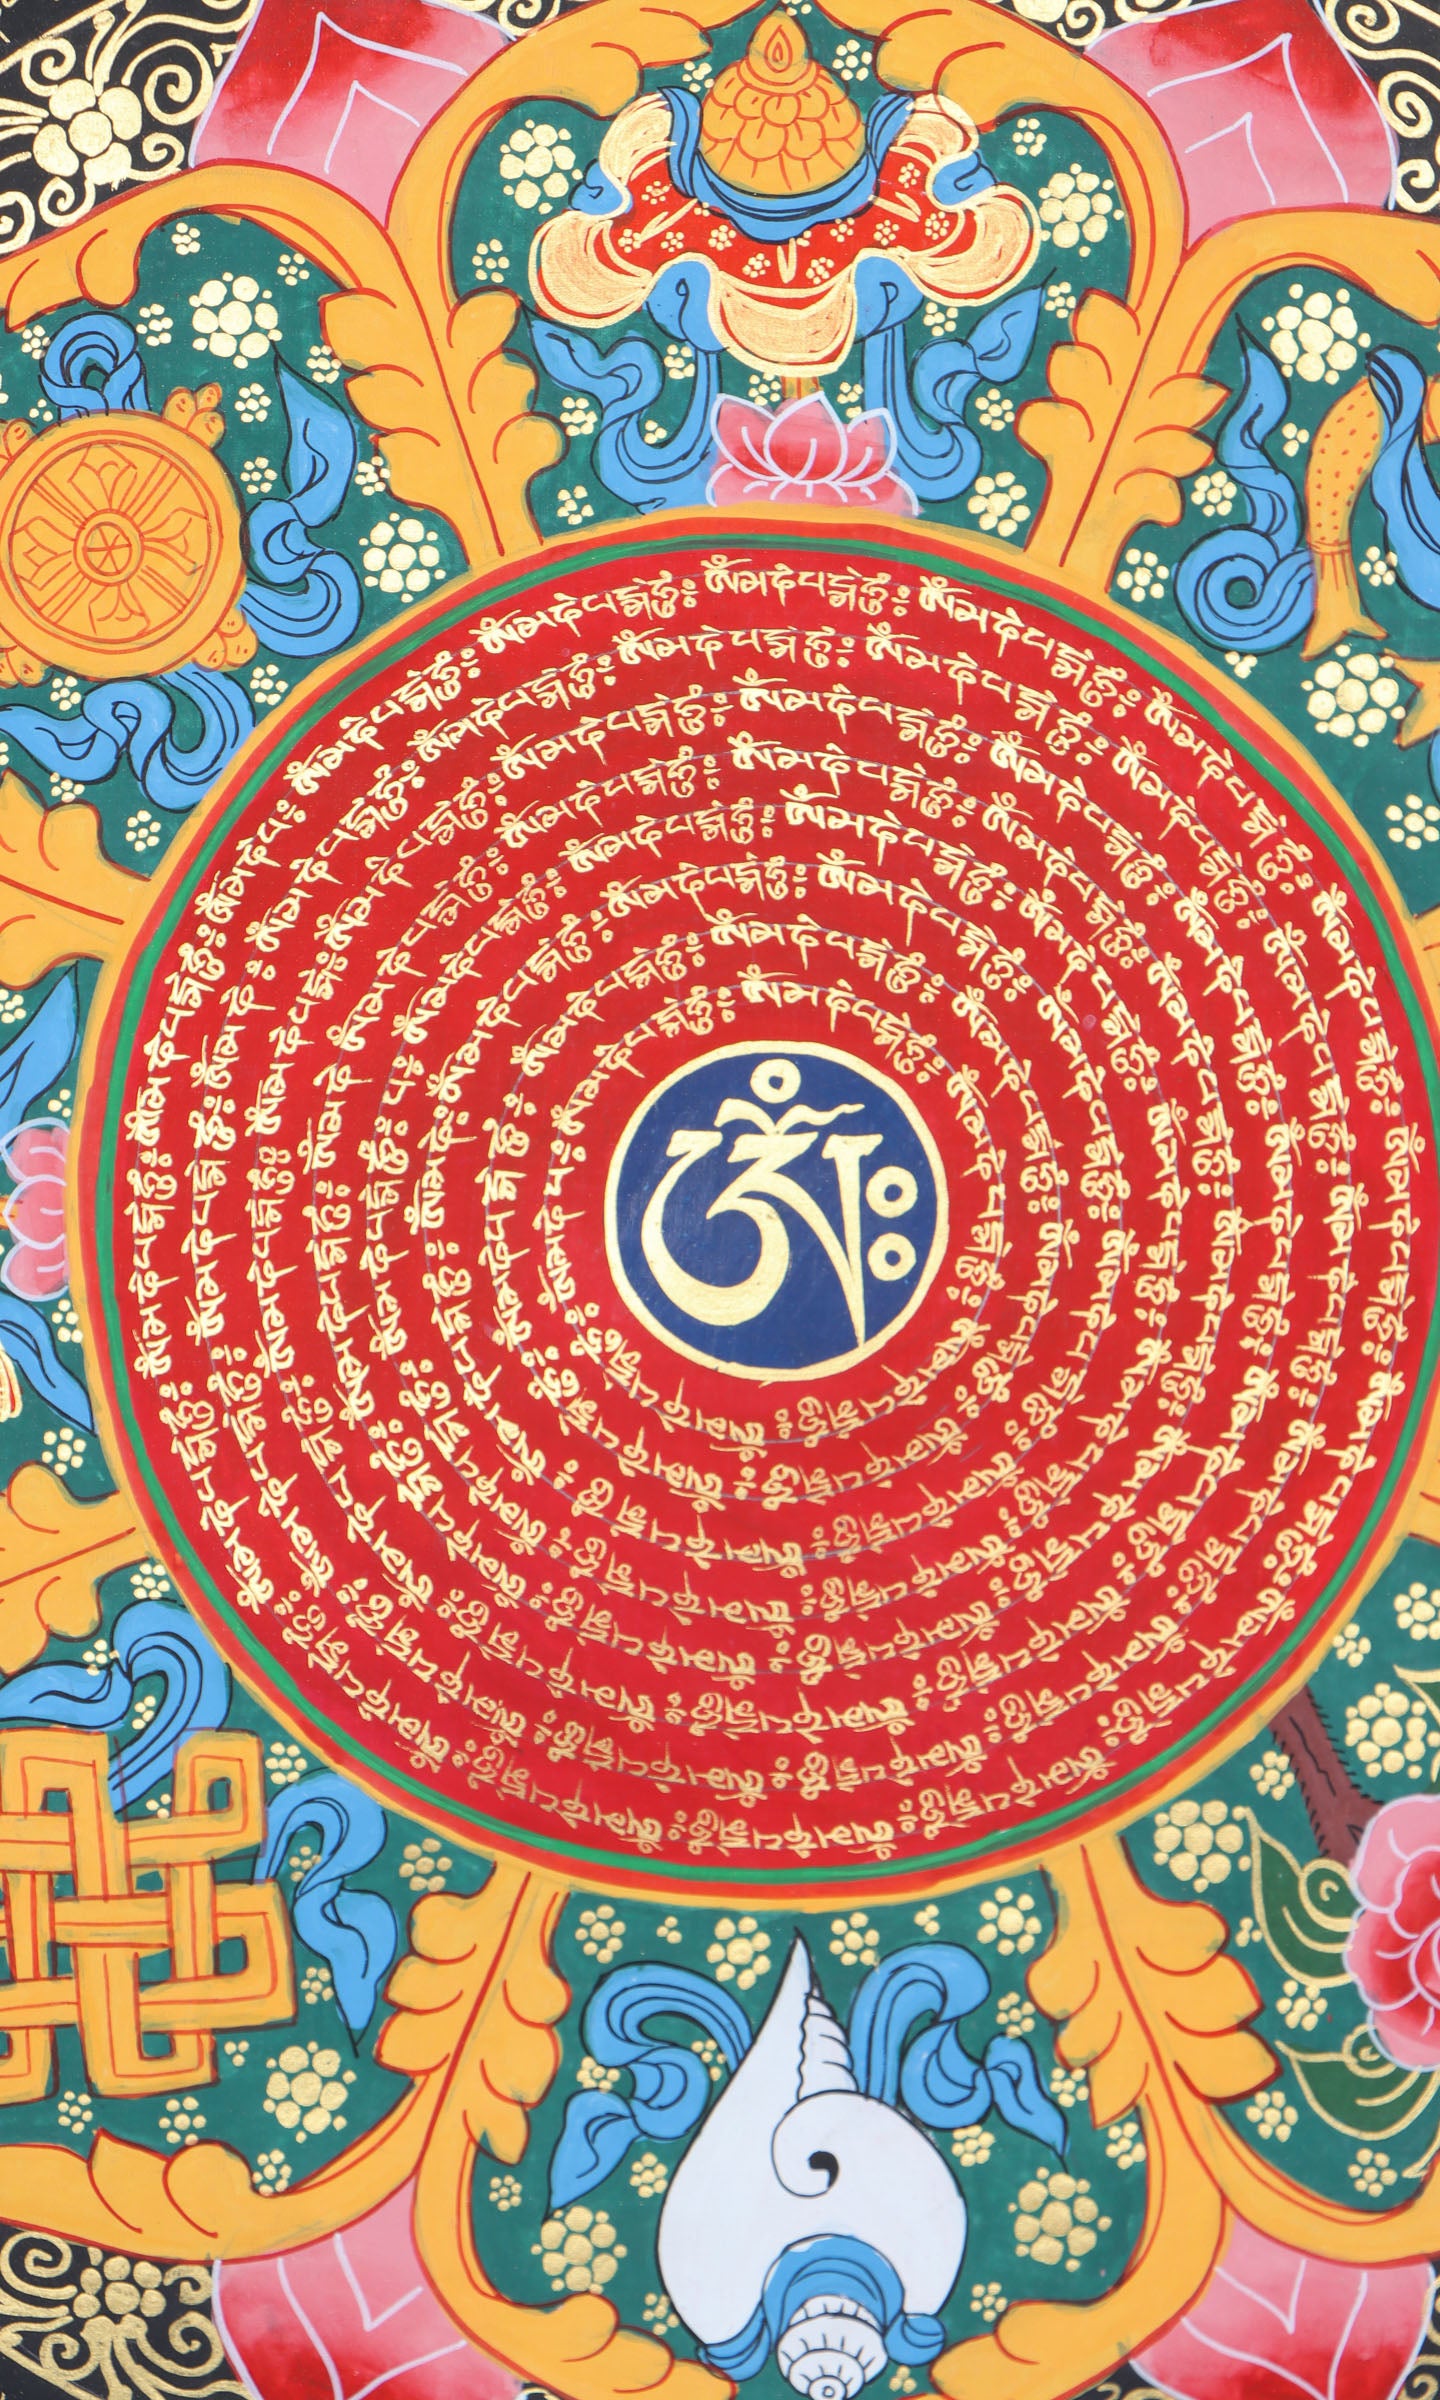 Asthamangal Mantra Mandala Thangka Painting - Tibetan Art